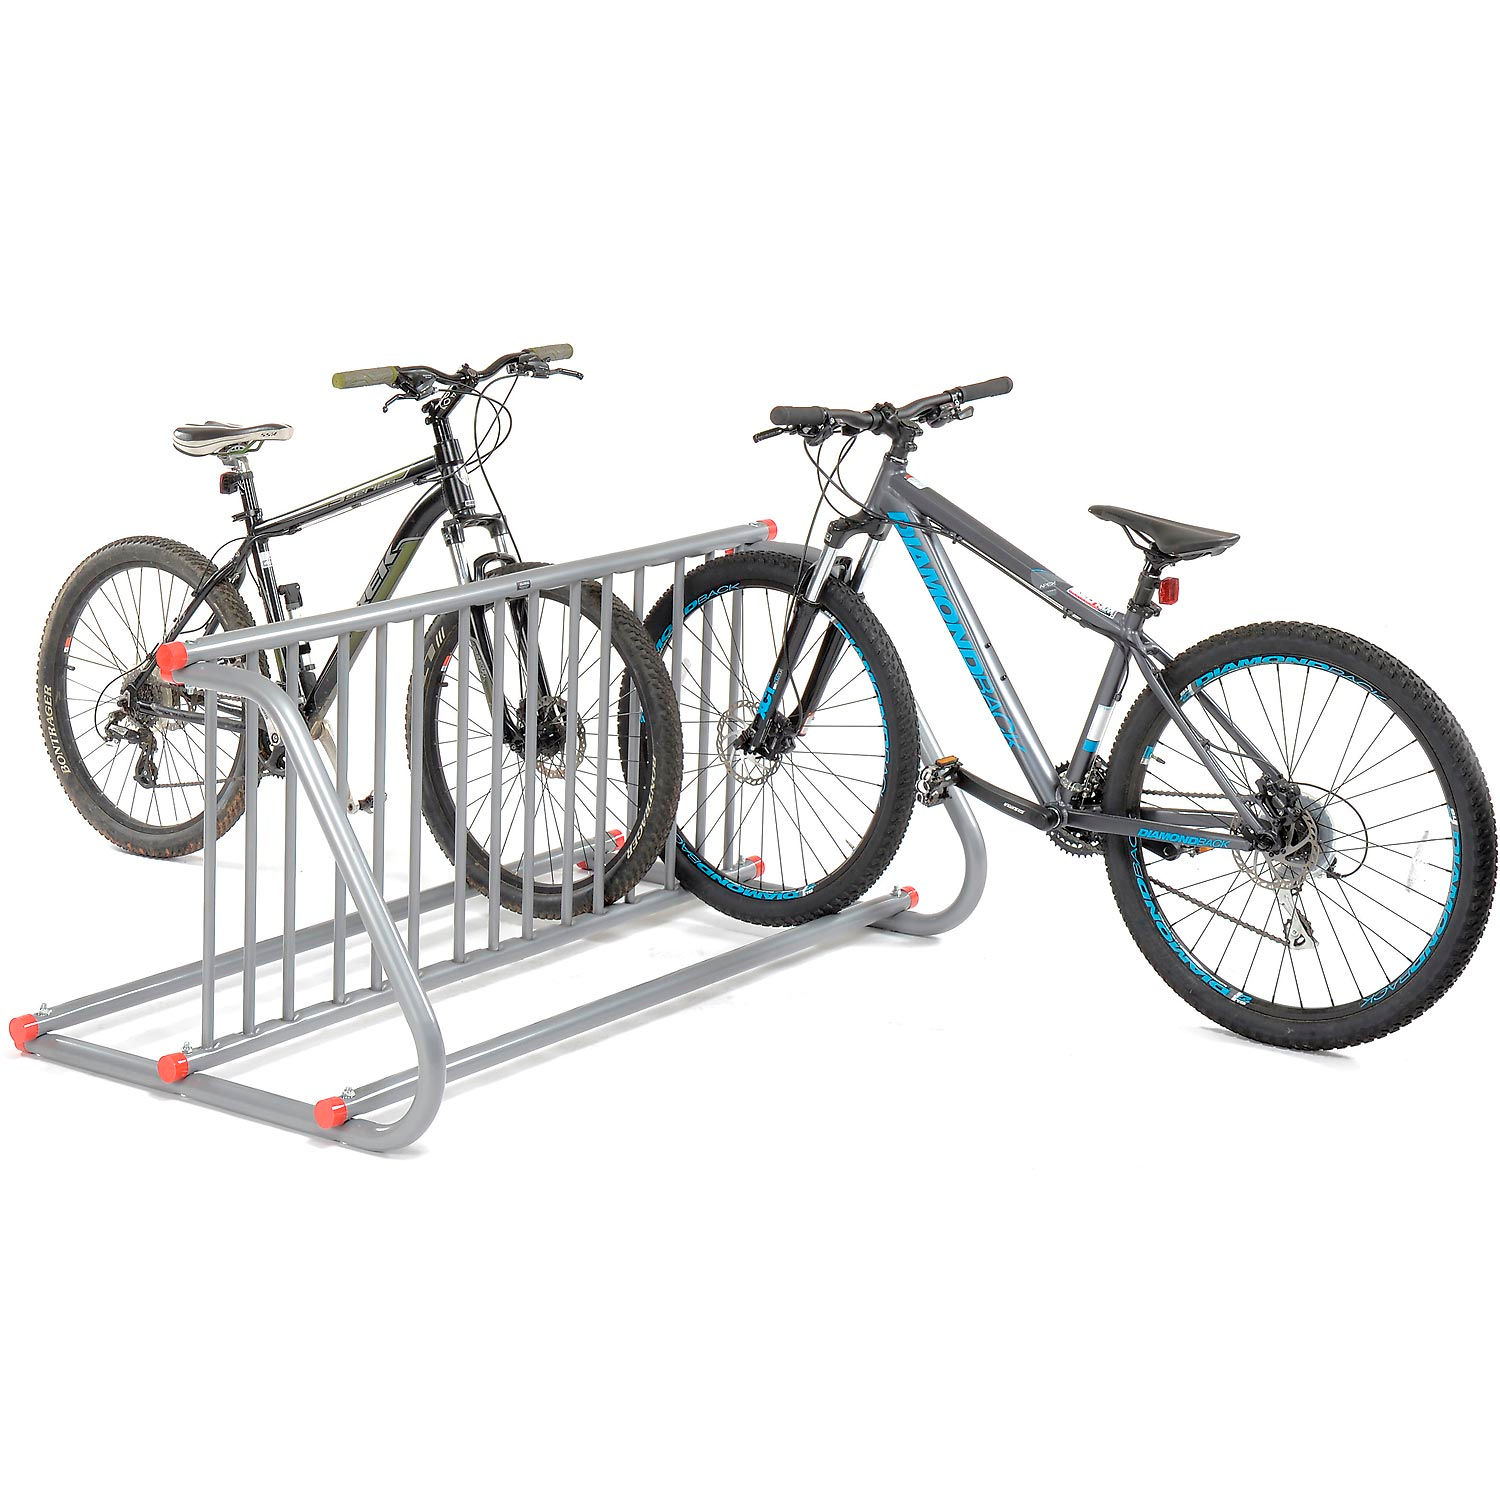 industrial bike rack